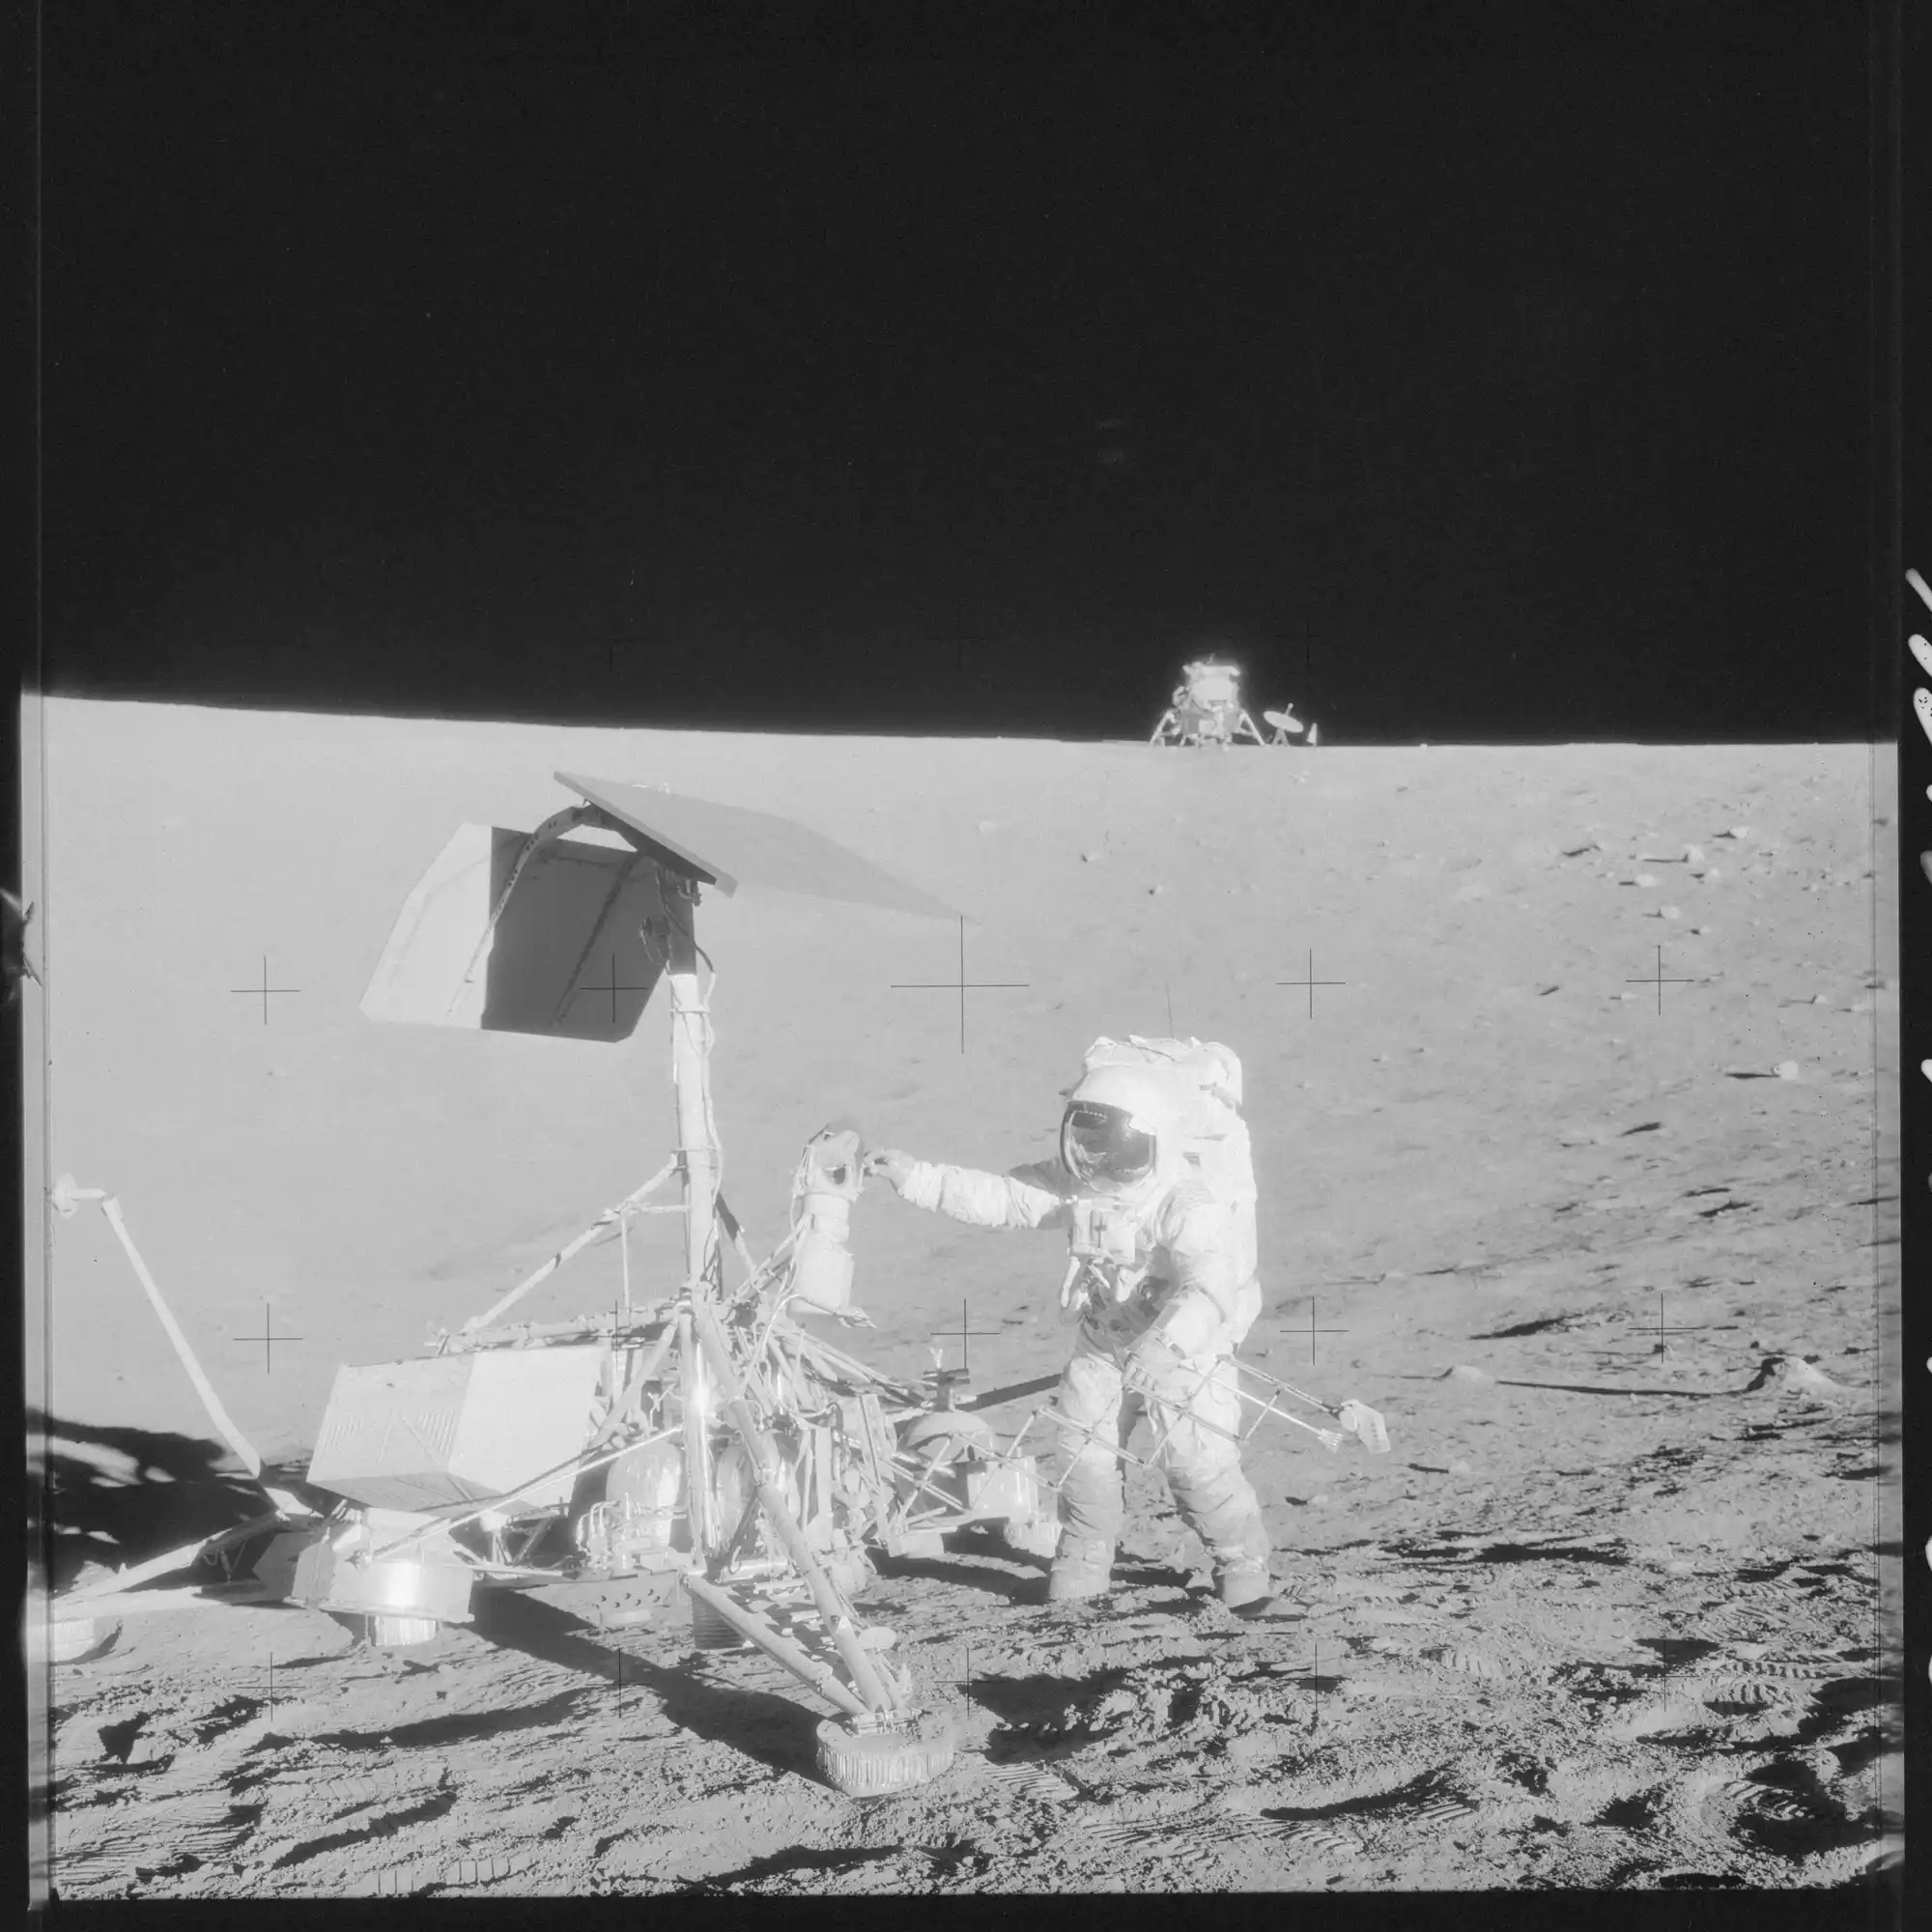 Apolo12 Surveyor3 Conrad